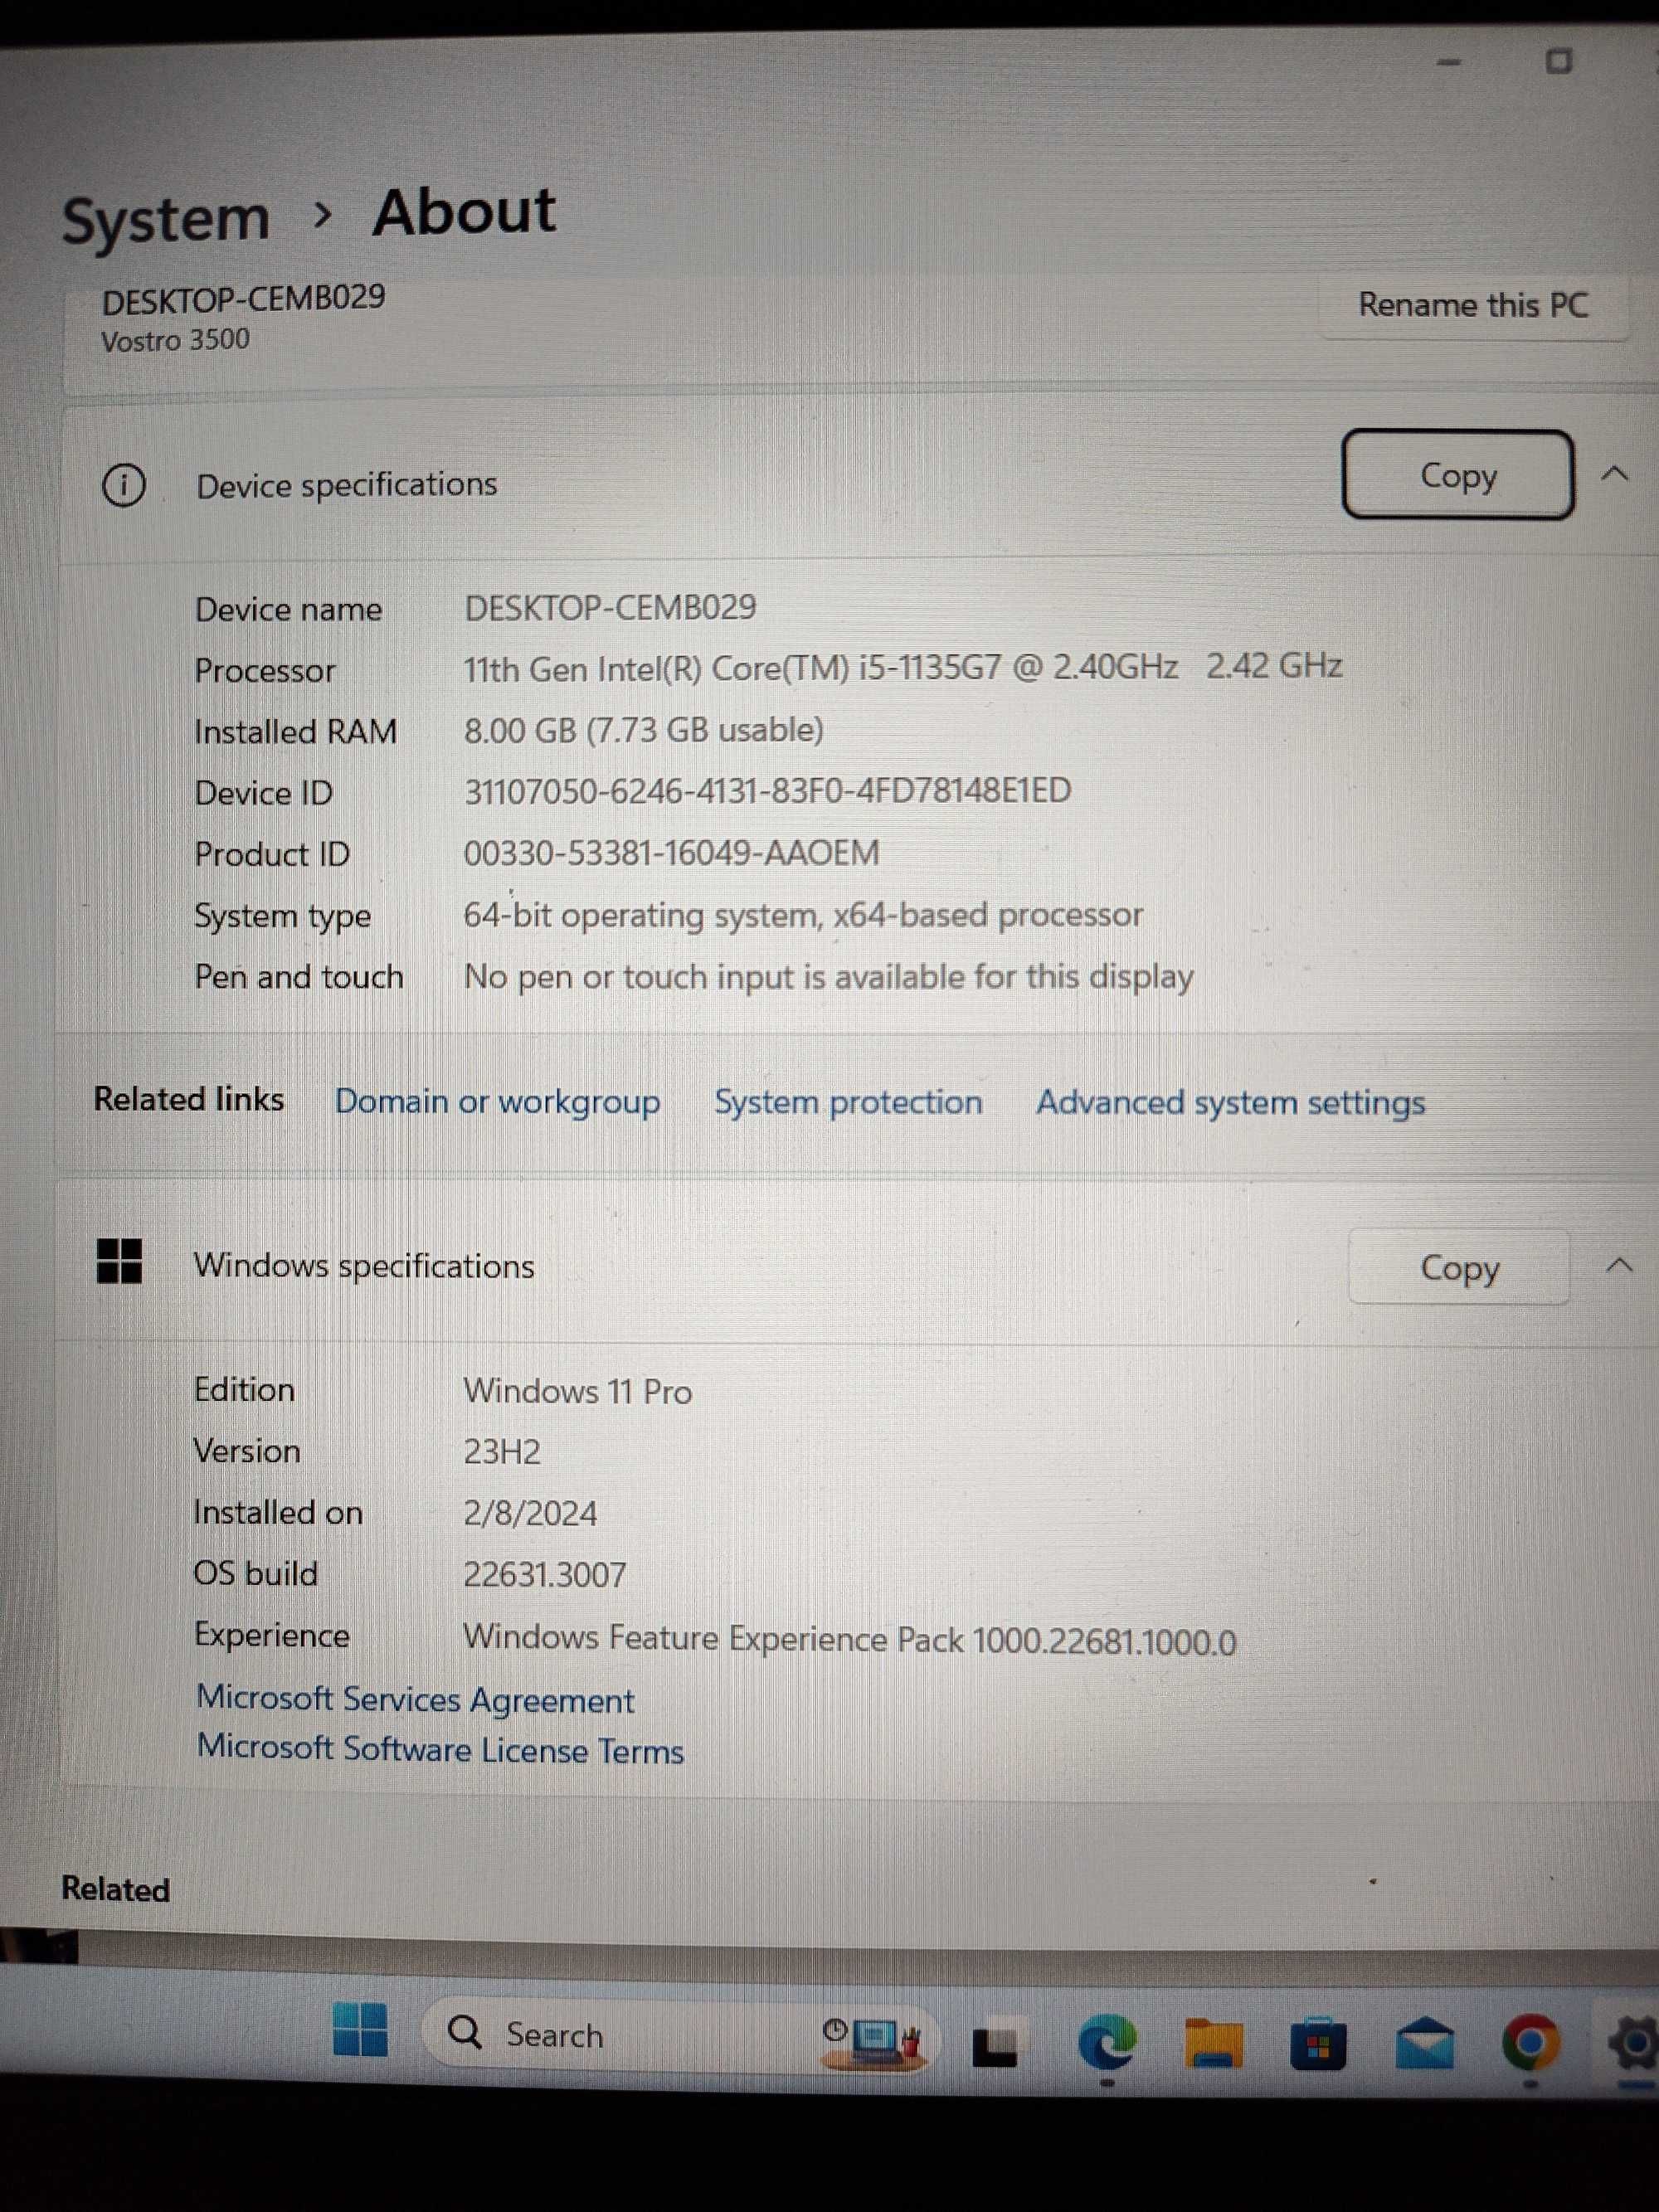 Laptop DELL Vostro 3500, I5-1135G7 11th Gen, 2.4Ghz, 8Gb RAM